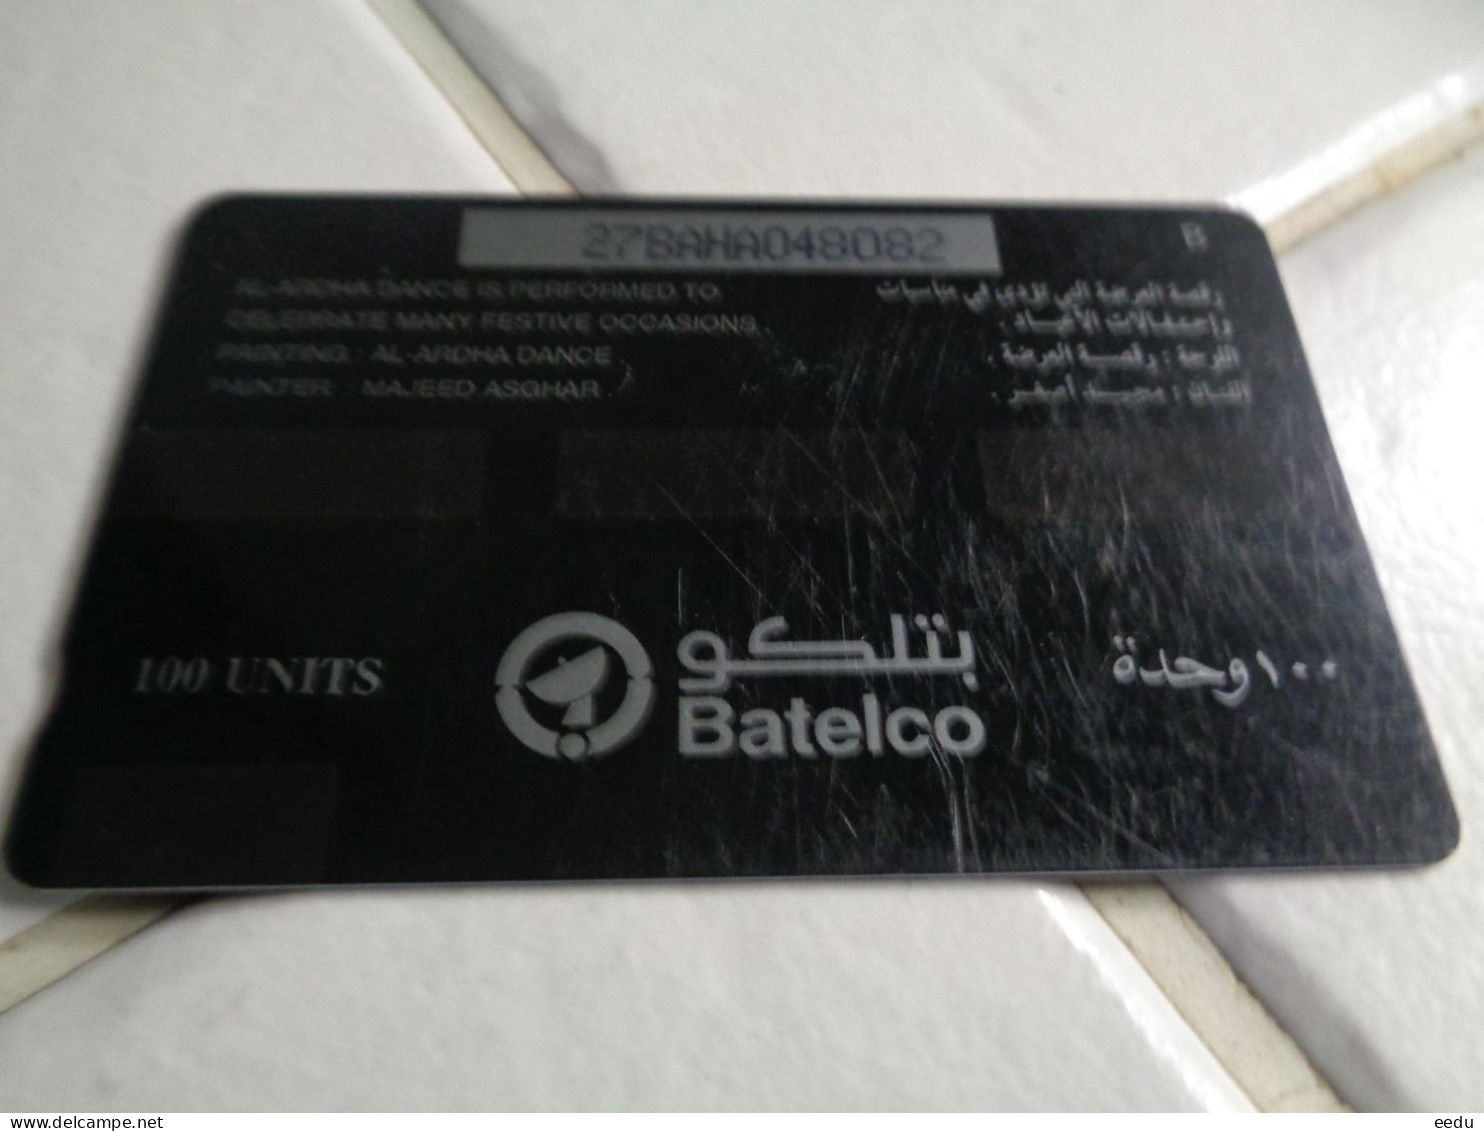 Bahrain Phonecard - Bahrein